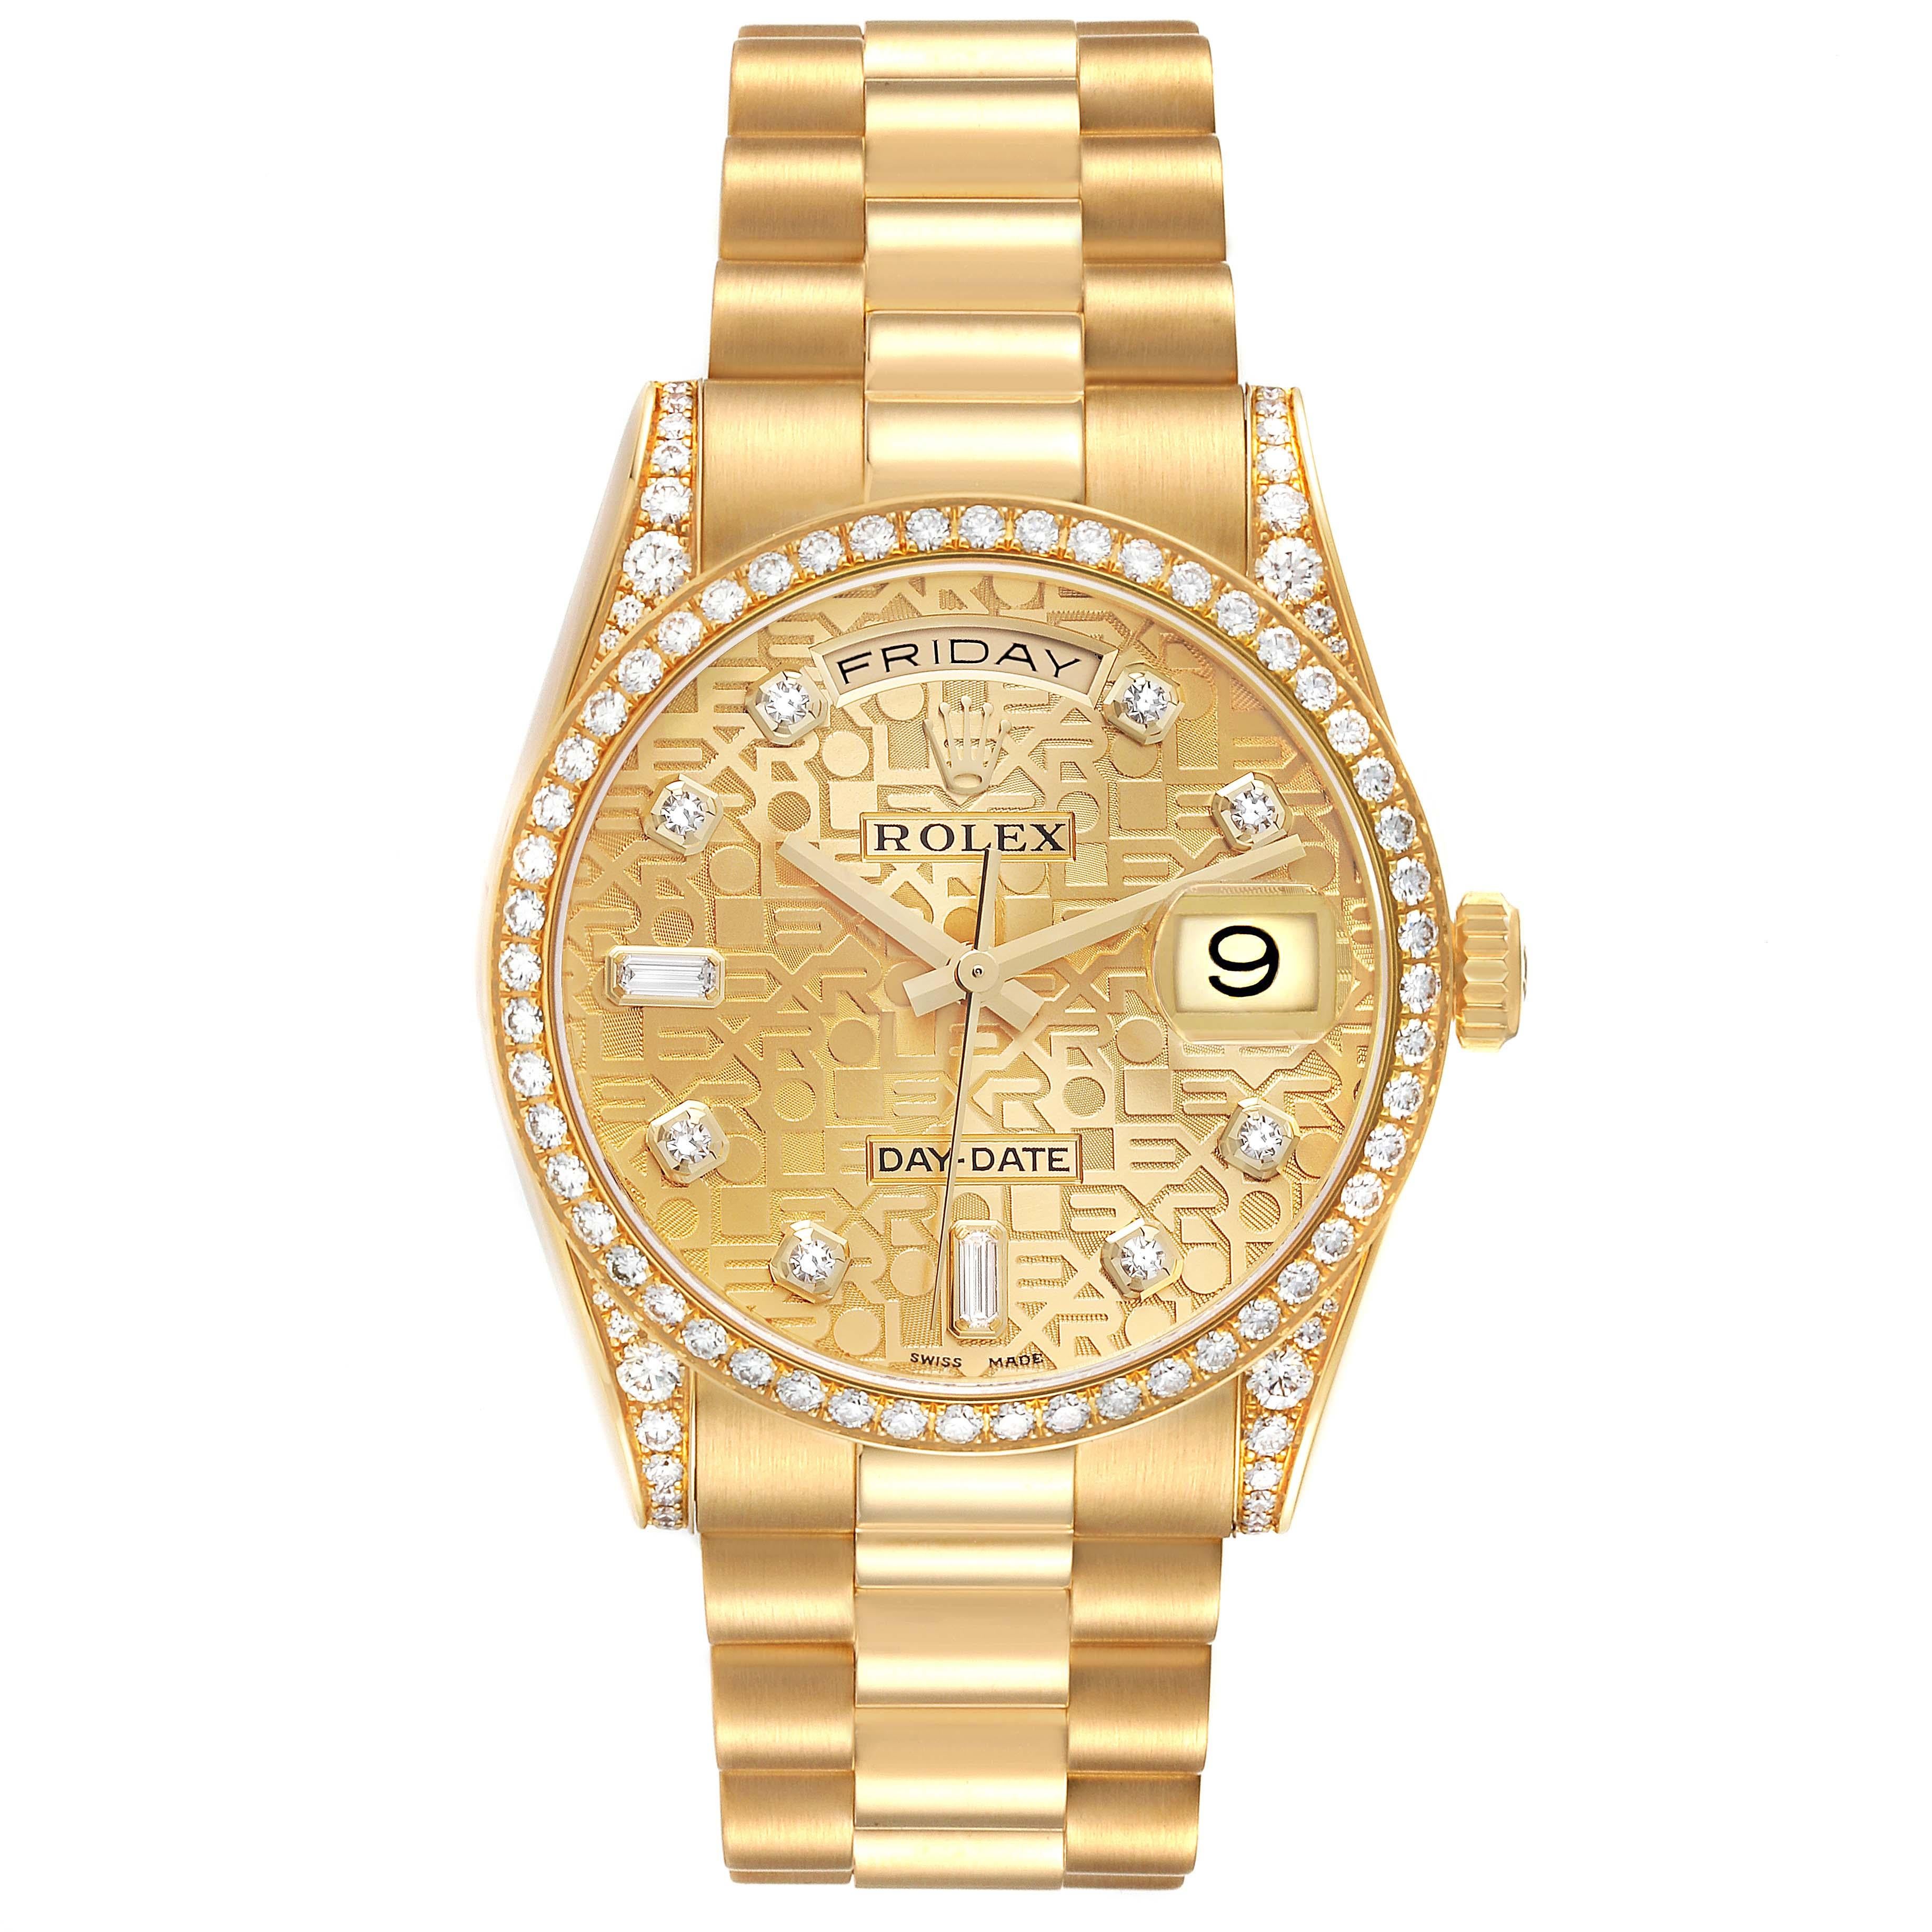 Rolex Day-Date President Yellow Gold Diamond Bezel Mens Watch 118388 Box Papers. Mouvement à remontage automatique certifié officiellement chronomètre. Double fonction de réglage rapide. Boîtier en or jaune 18 carats d'un diamètre de 36,0 mm. Logo